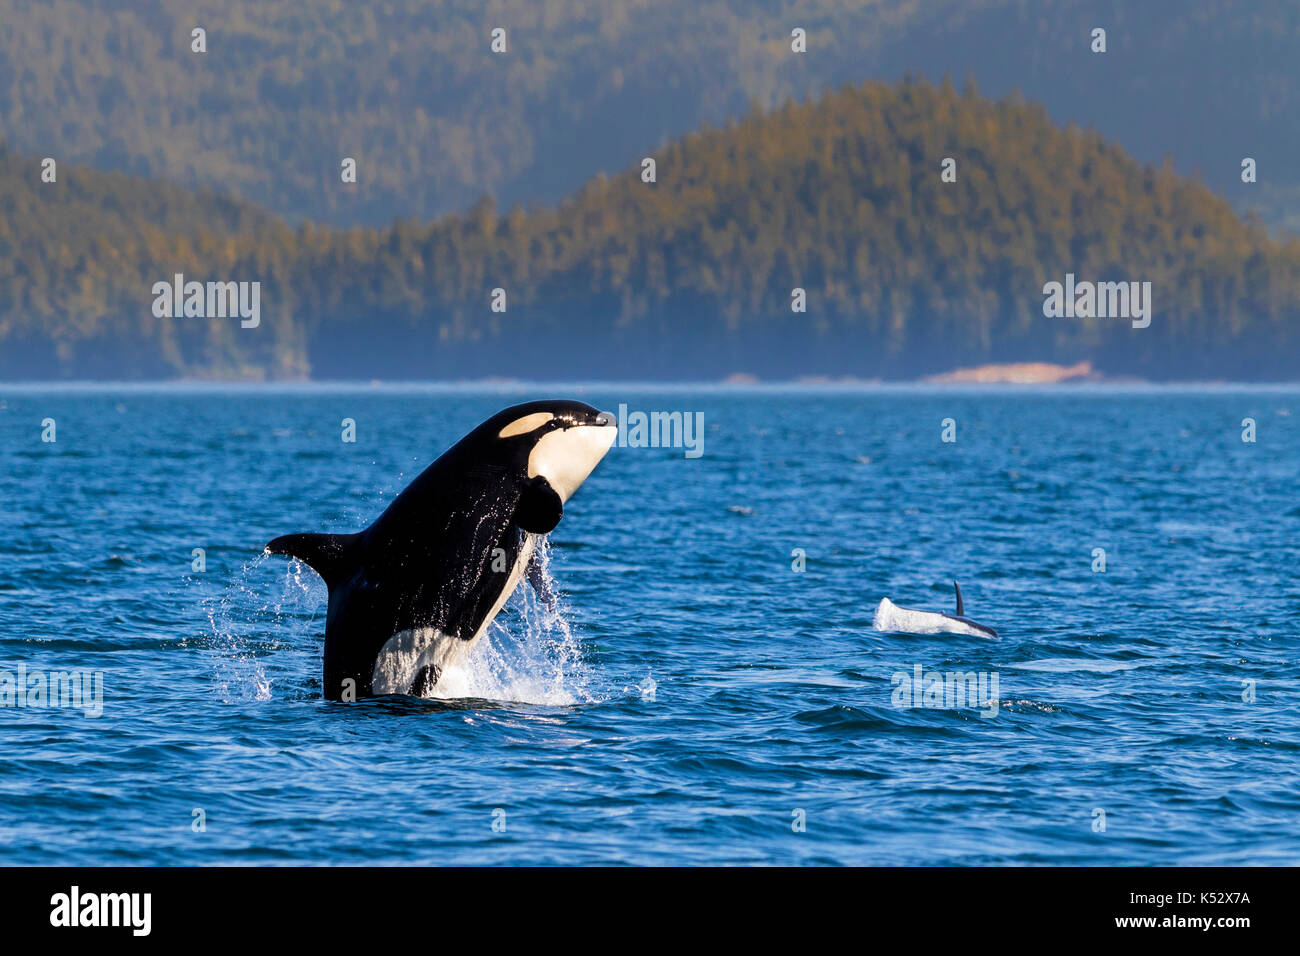 Résident du nord killeer whale breaching en face de l'île Swanson au large du nord de l'île de Vancouver, Colombie-Britannique, Canada. Banque D'Images